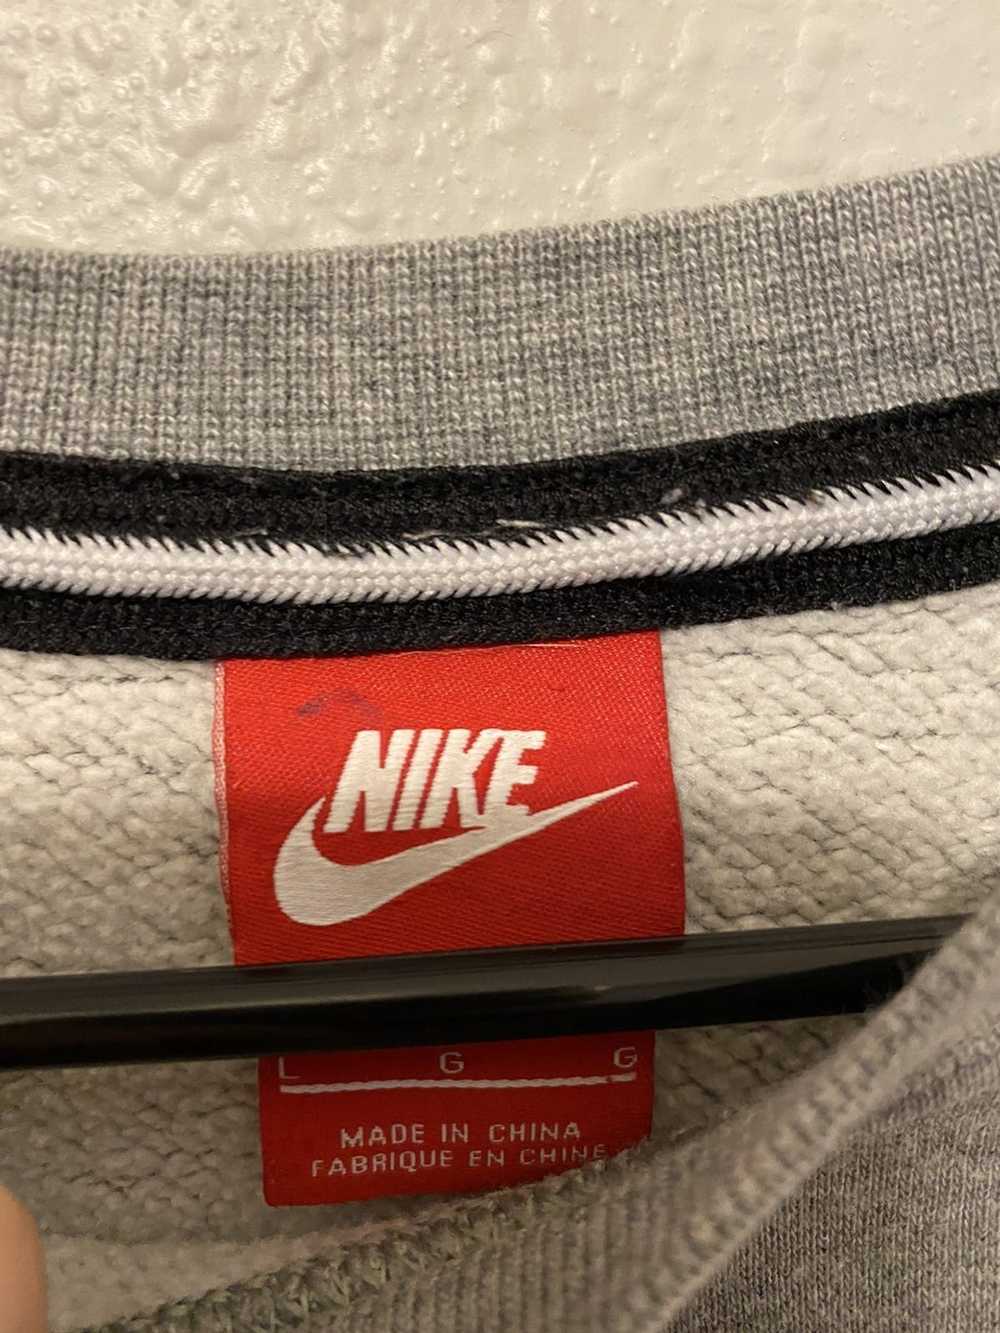 Nike Nike Jacket - image 5